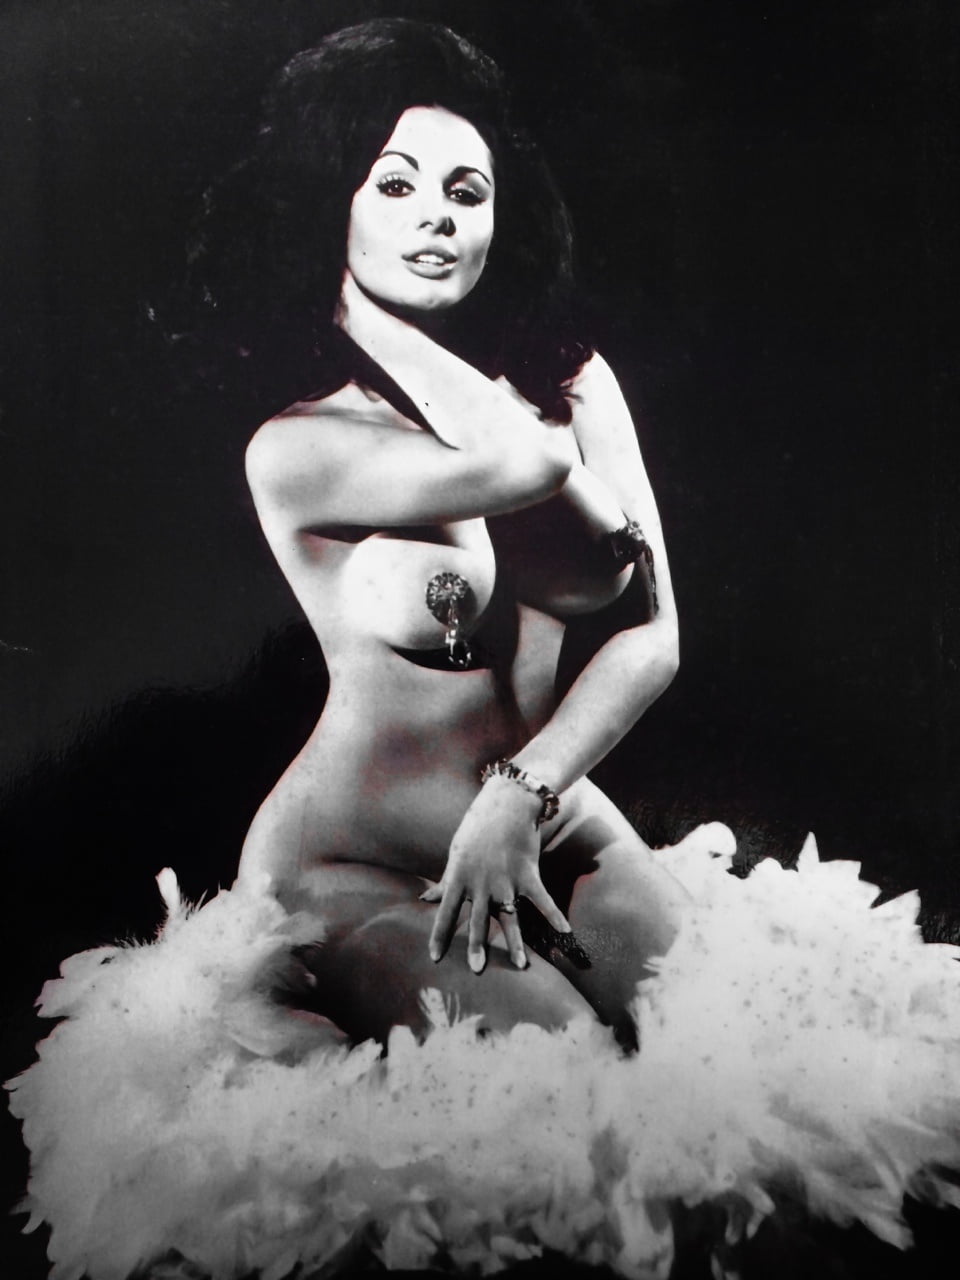 Obejrzyj Vintage Strippers (1940s-1970s) - 2 zdjęć na xHamster.com! 